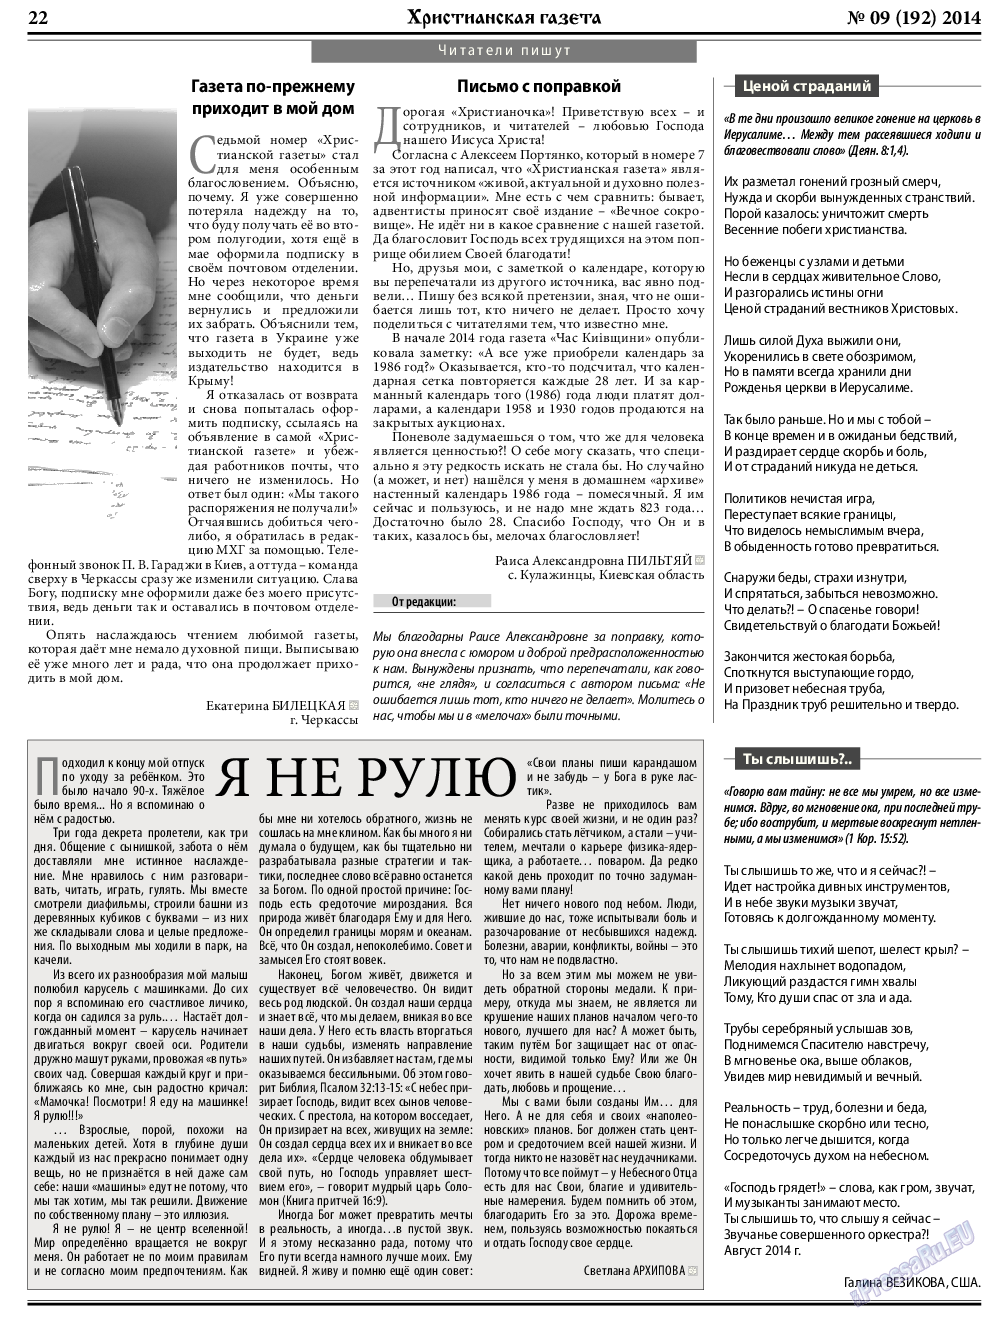 Христианская газета, газета. 2014 №9 стр.30